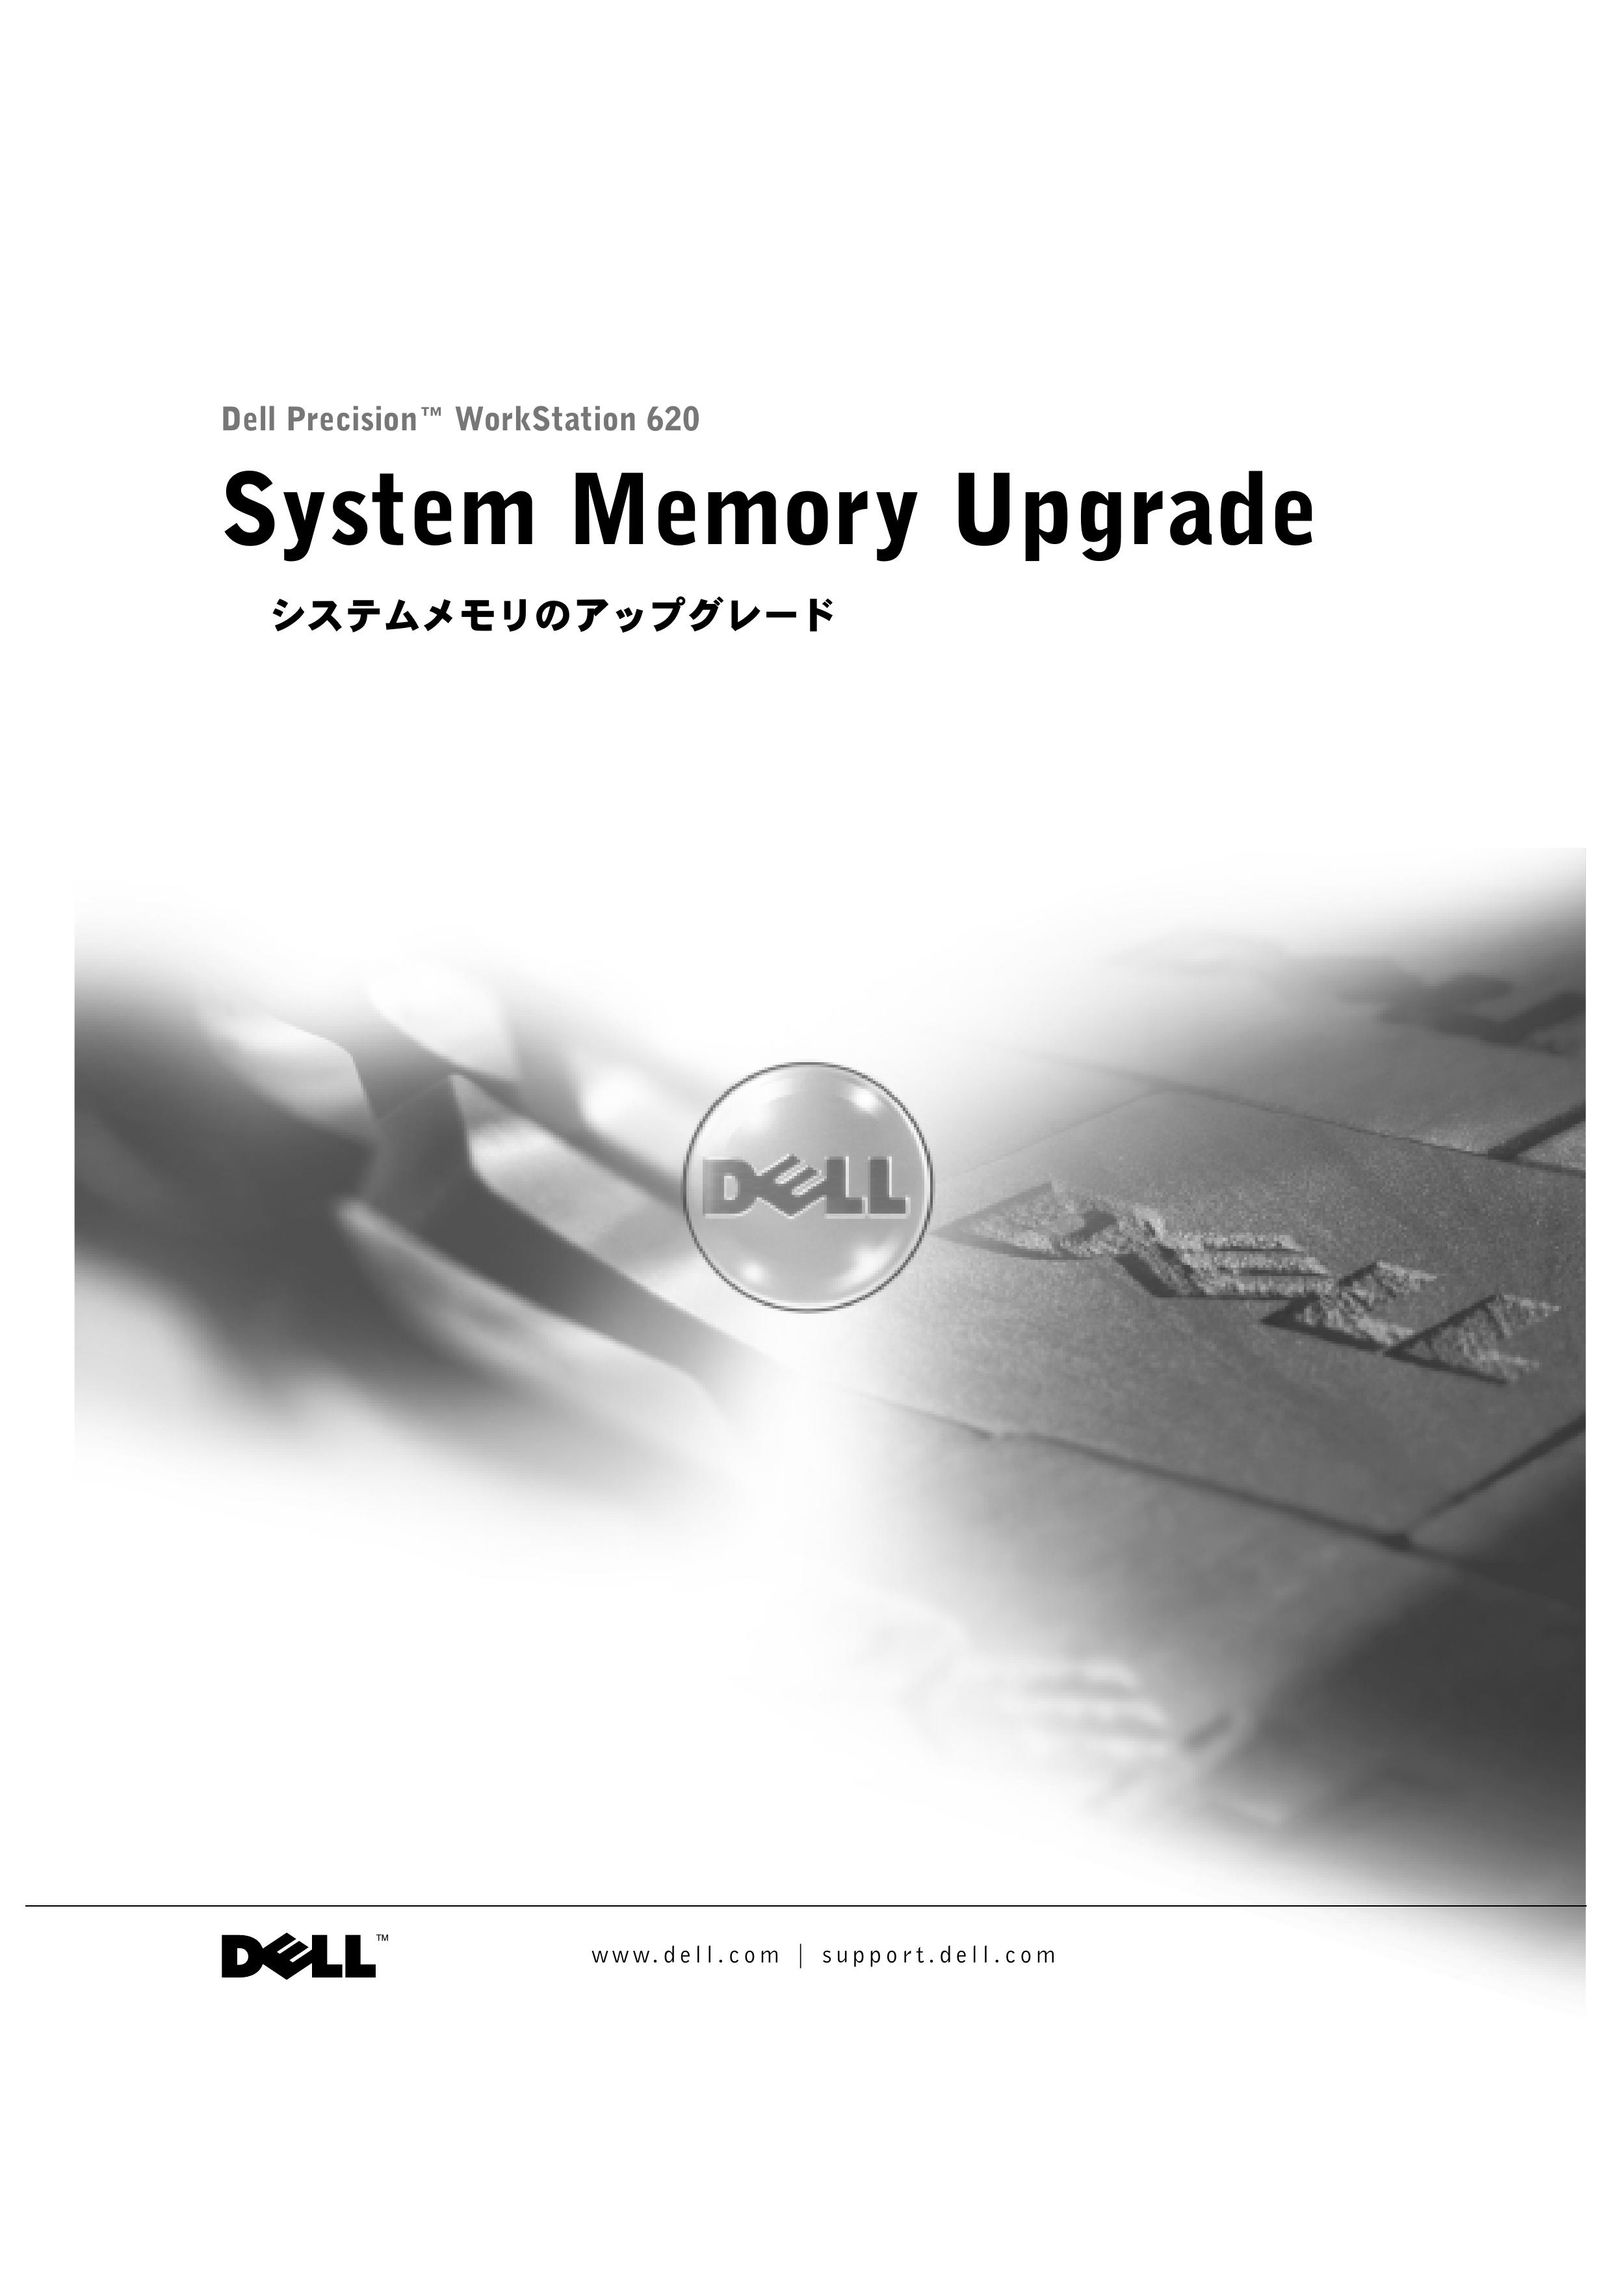 Dell dell precision workstation 620 Computer Hardware User Manual